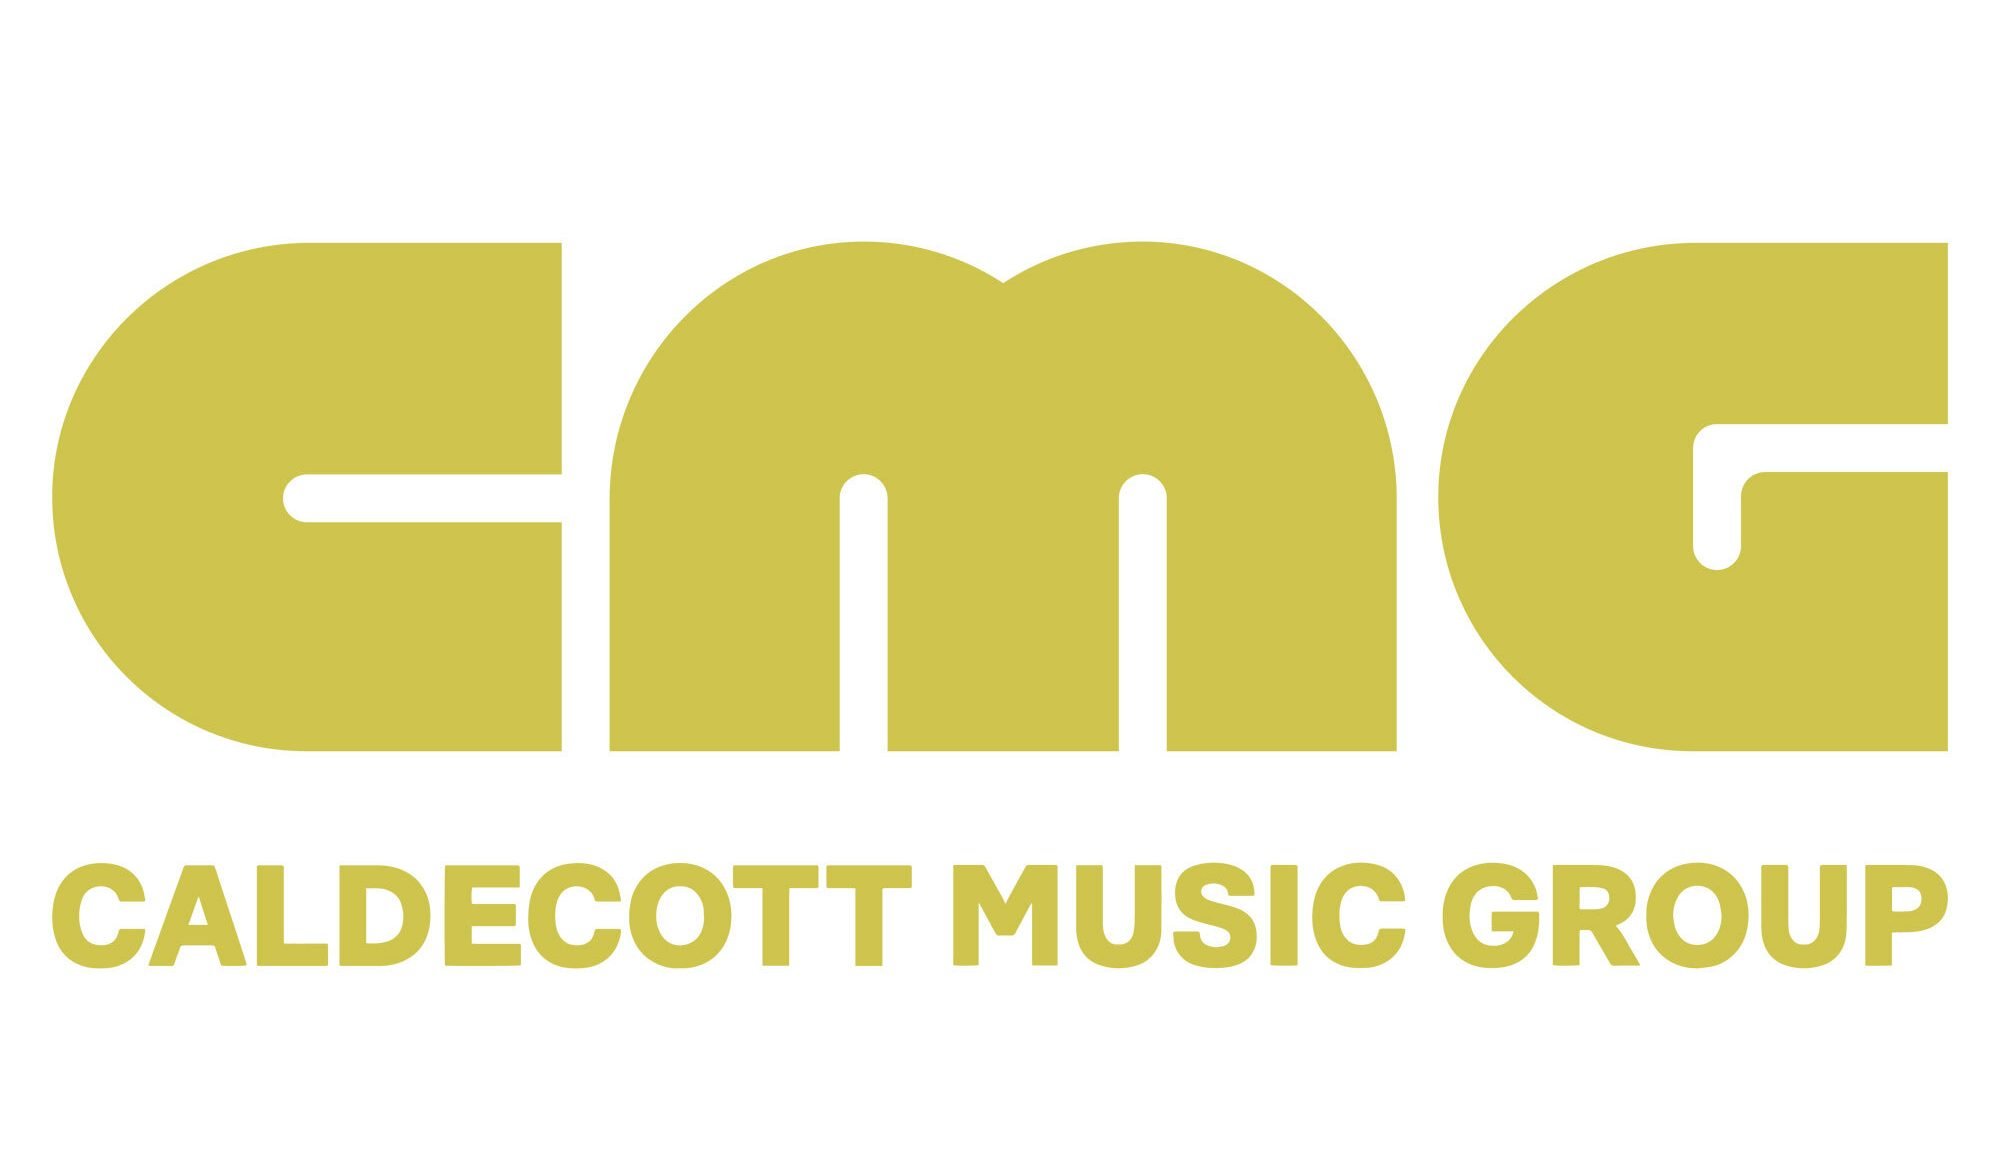 Caldecott Music Group revealed as new umbrella of BandLab